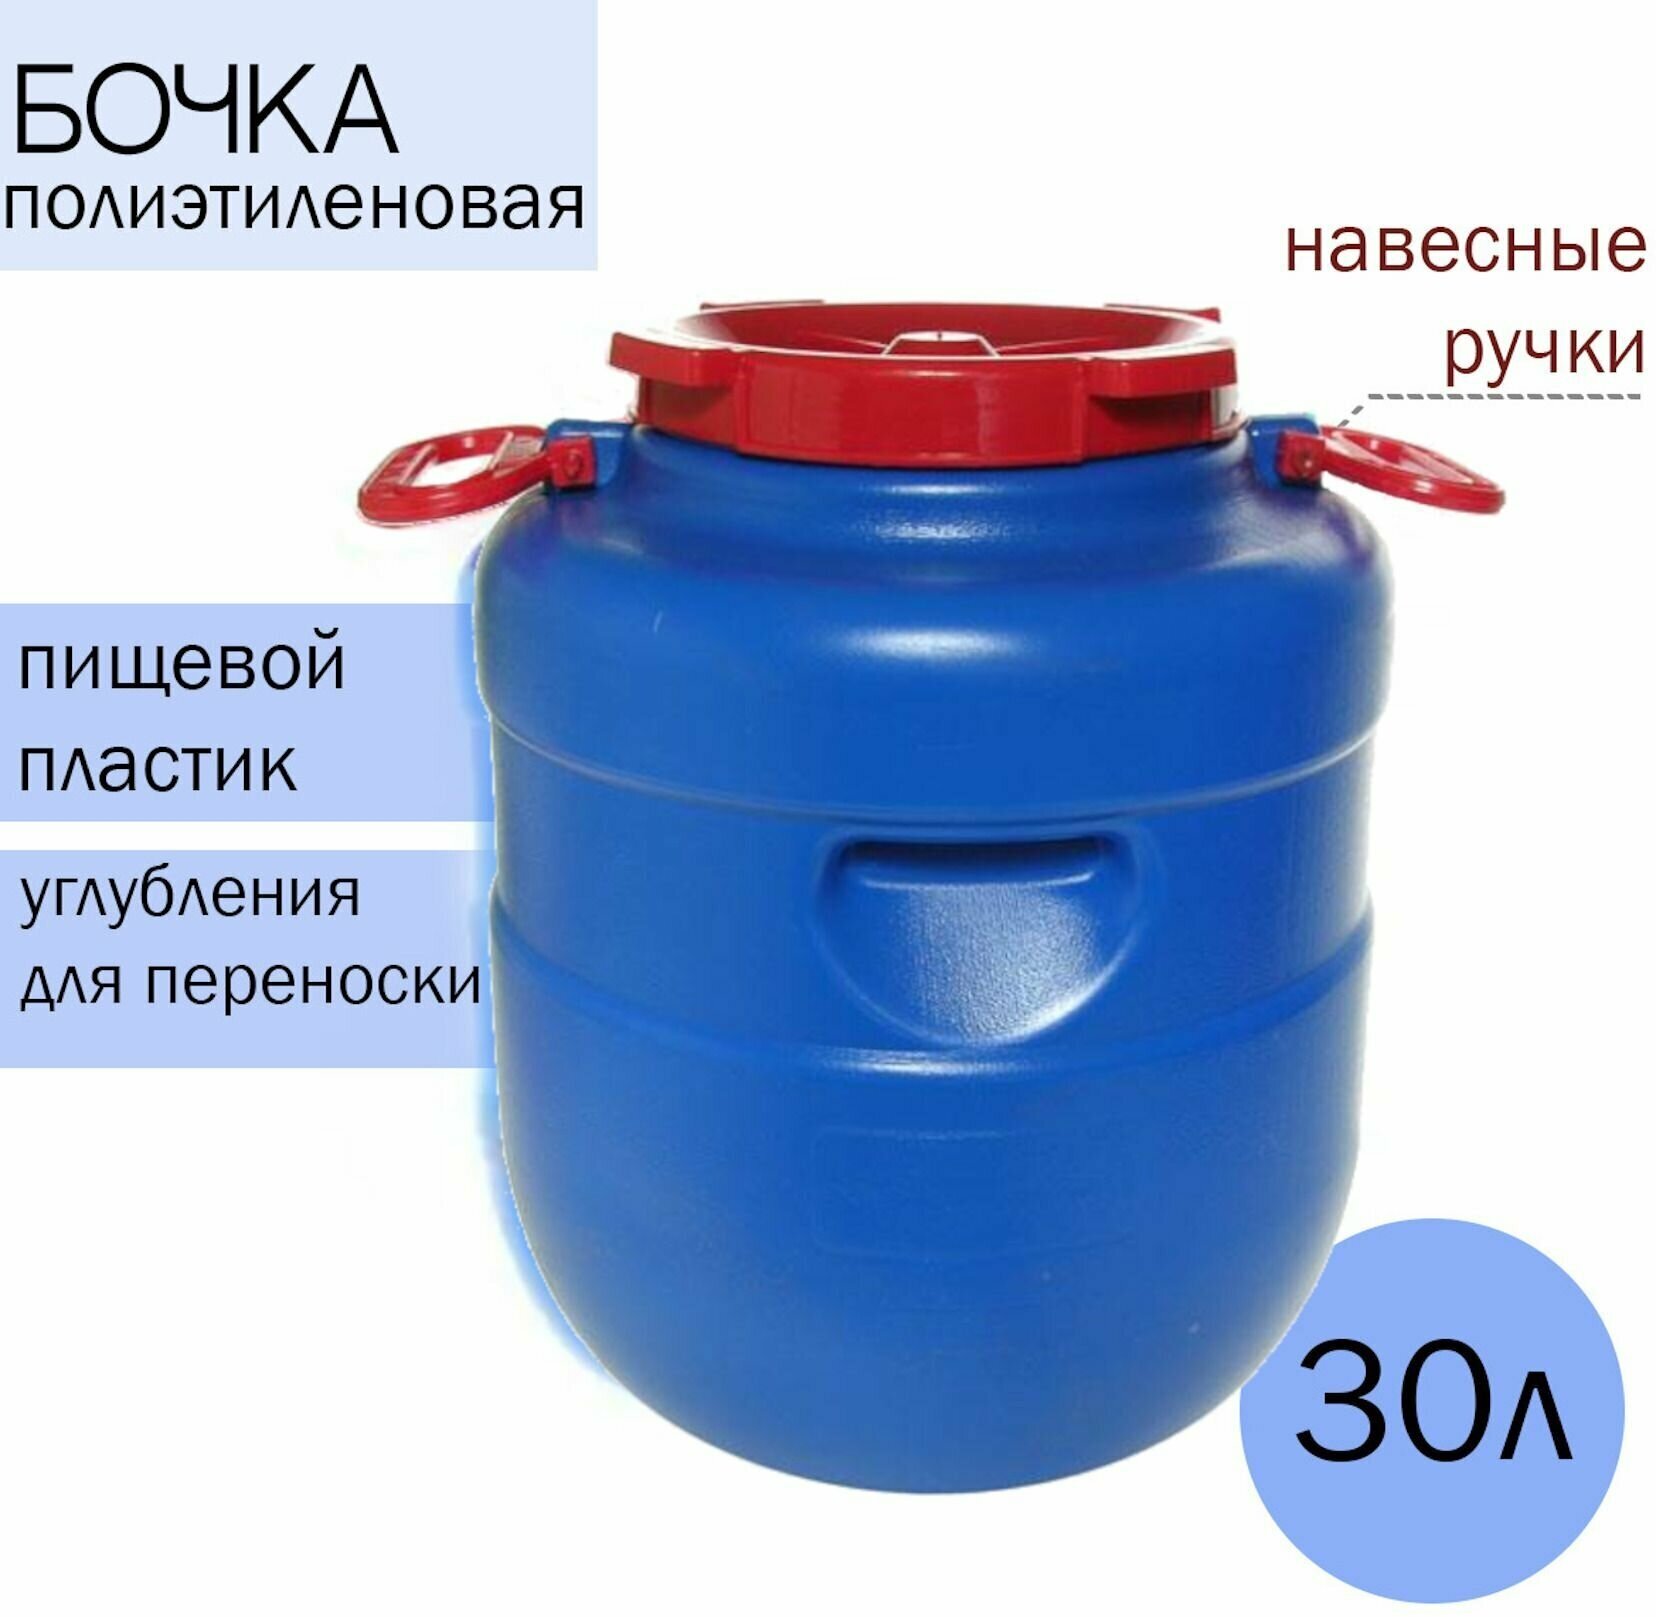 Канистра-бочка, фляга 30 литров круглая Дачная цветная с ручками, для хранения воды, на улице, дома, в бане